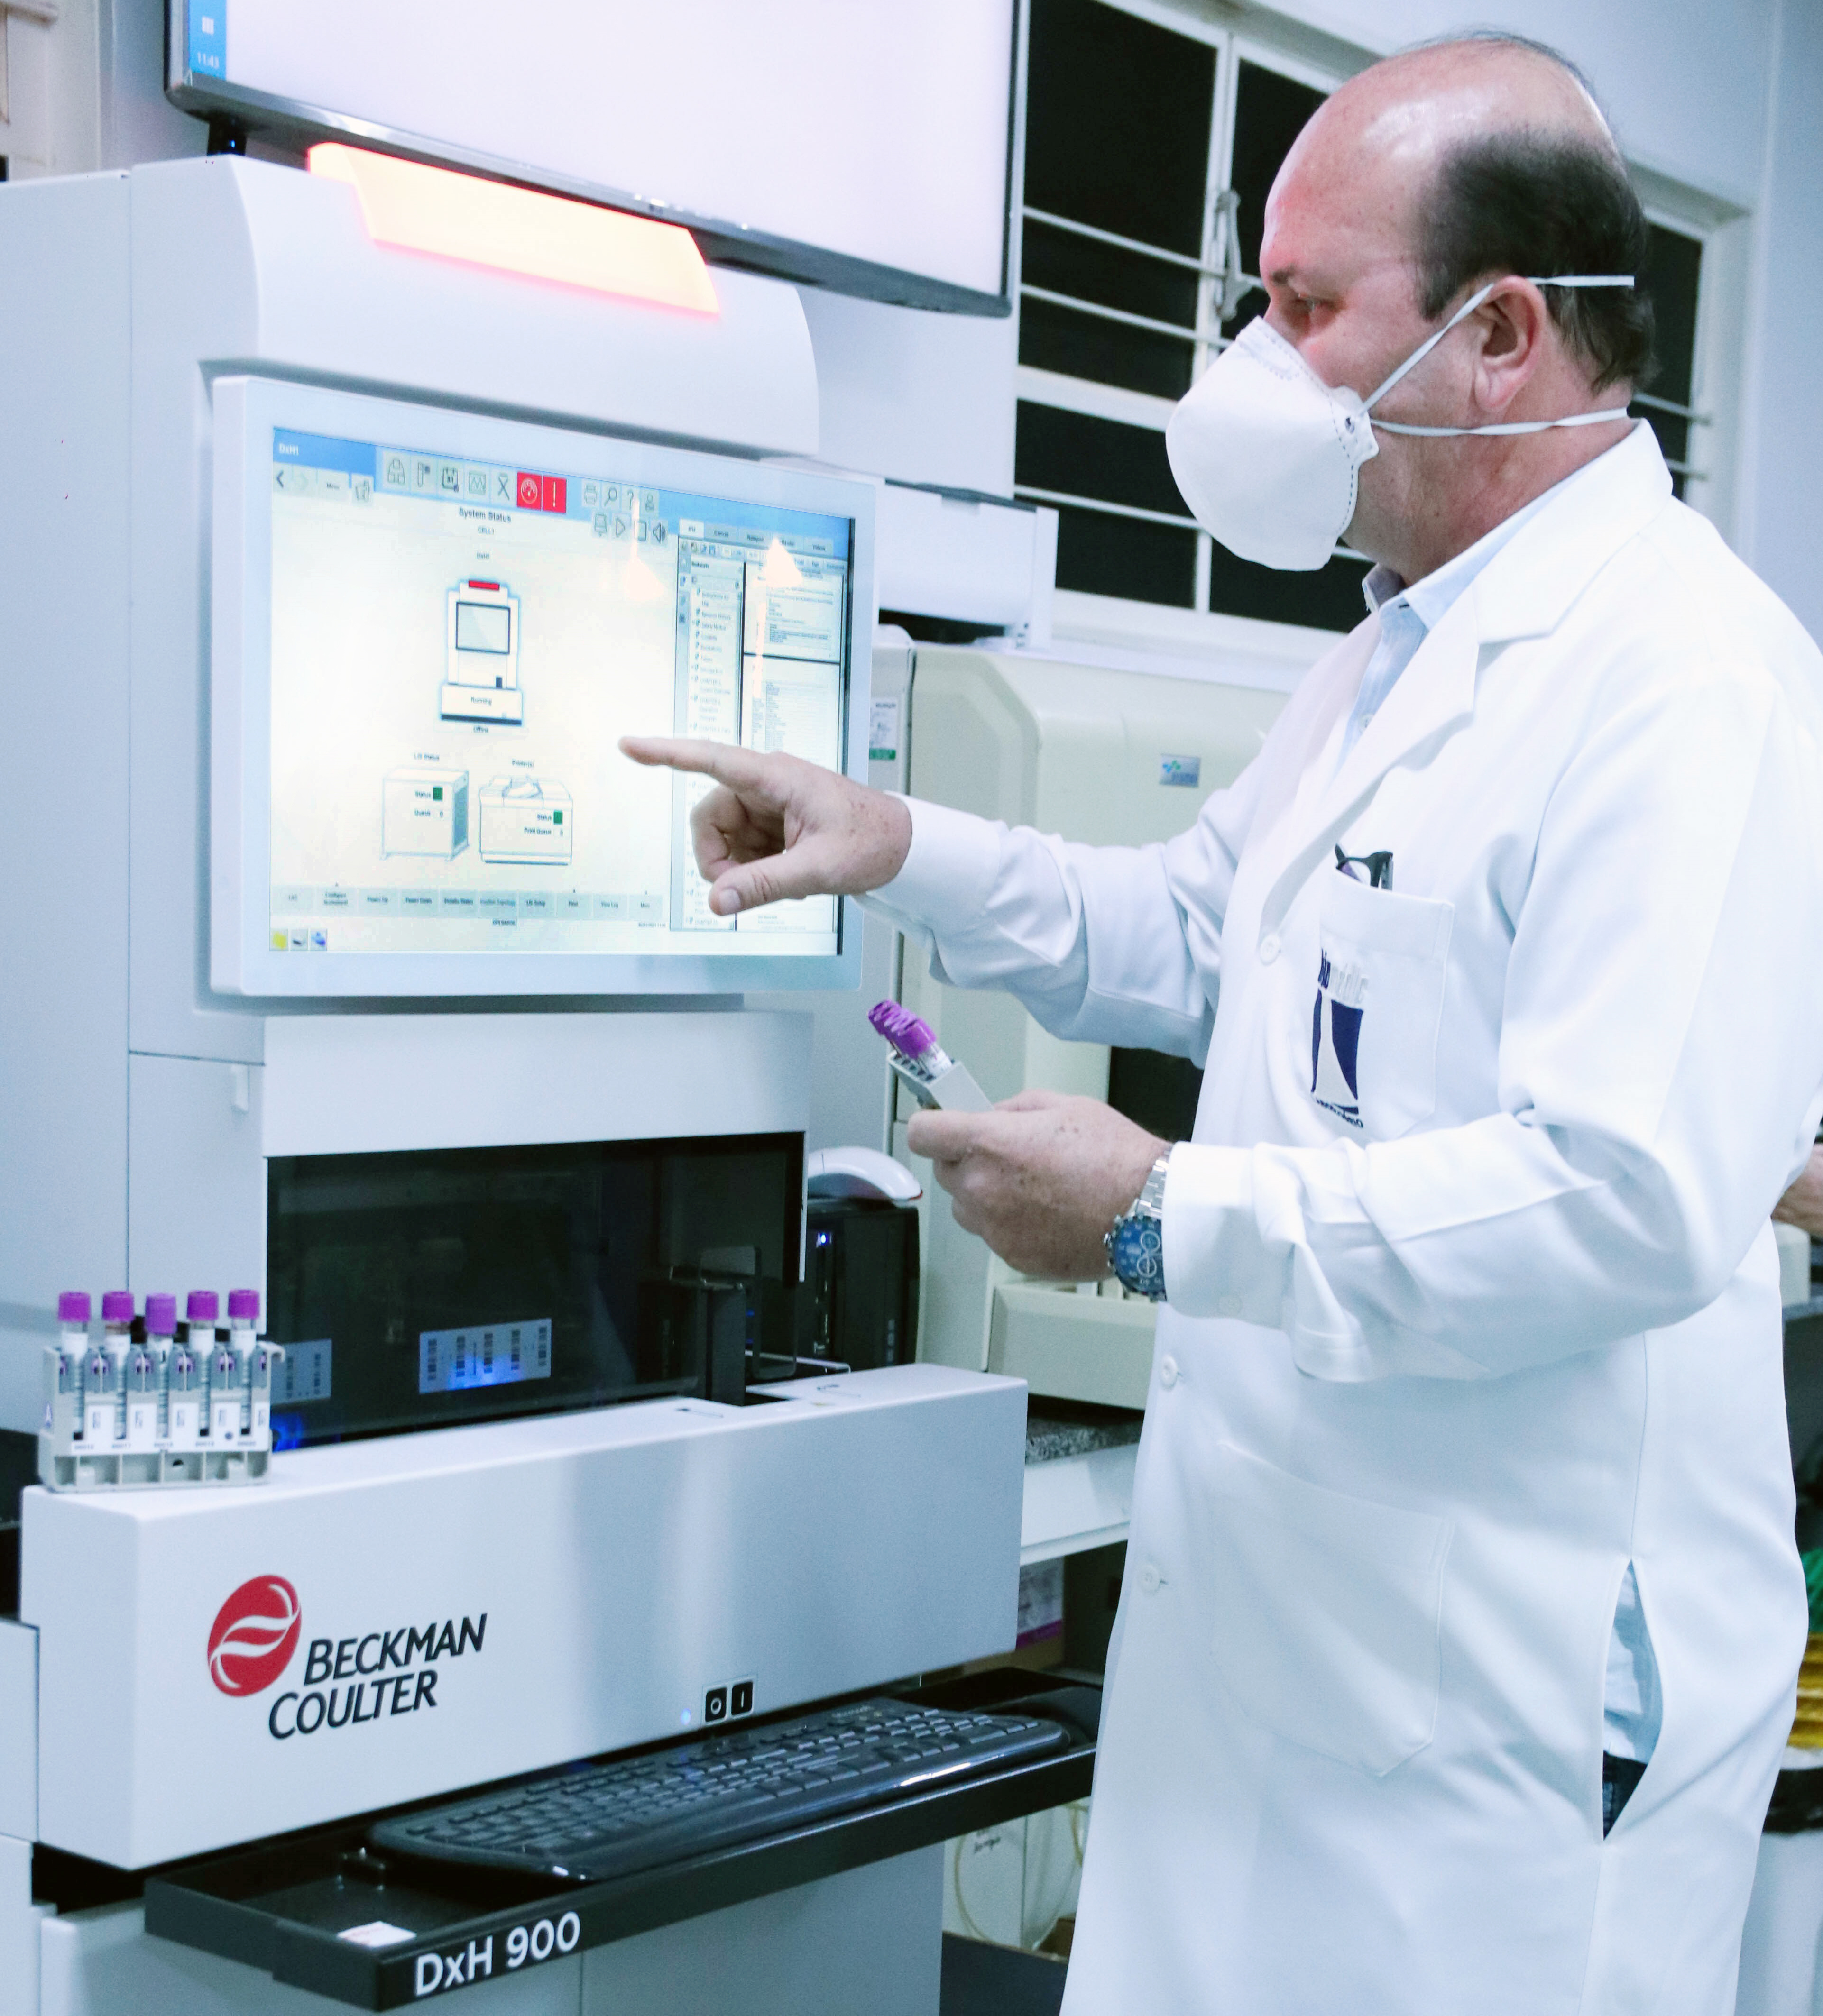 BioExame adquire equipamento moderno para realizar exame de hemograma completo